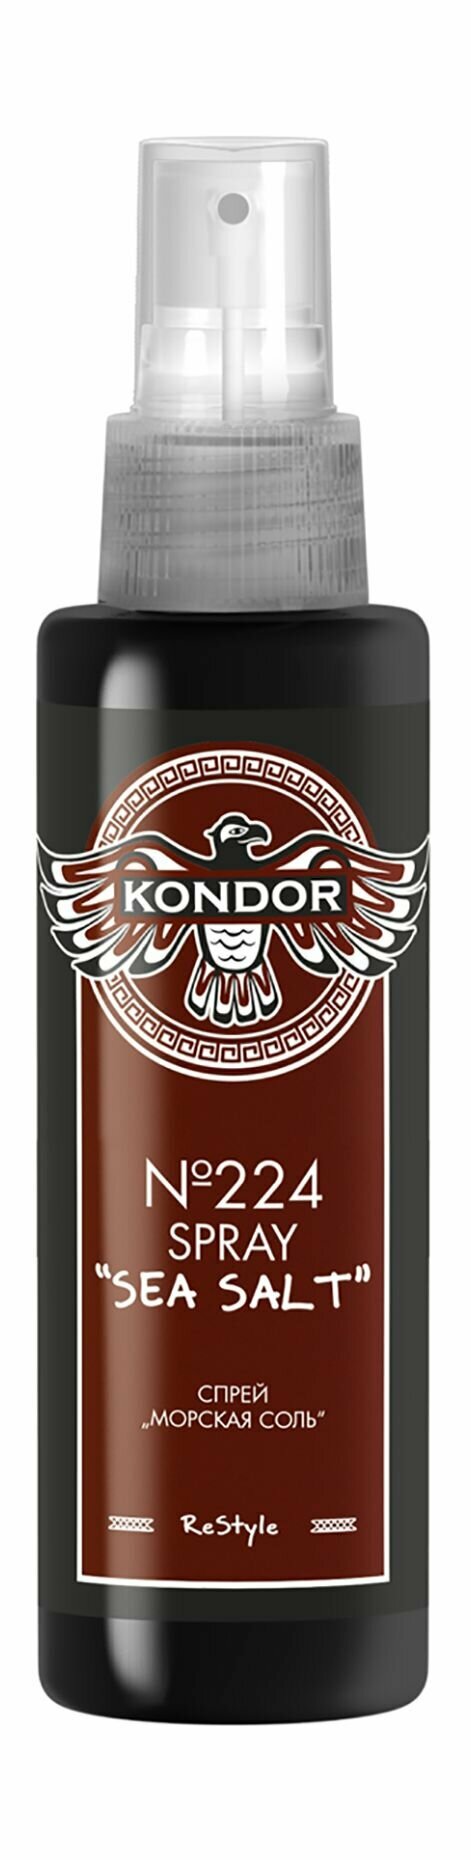 Спрей для укладки волос с морской солью / Kondor Re Style №224 Sea Salt Spray